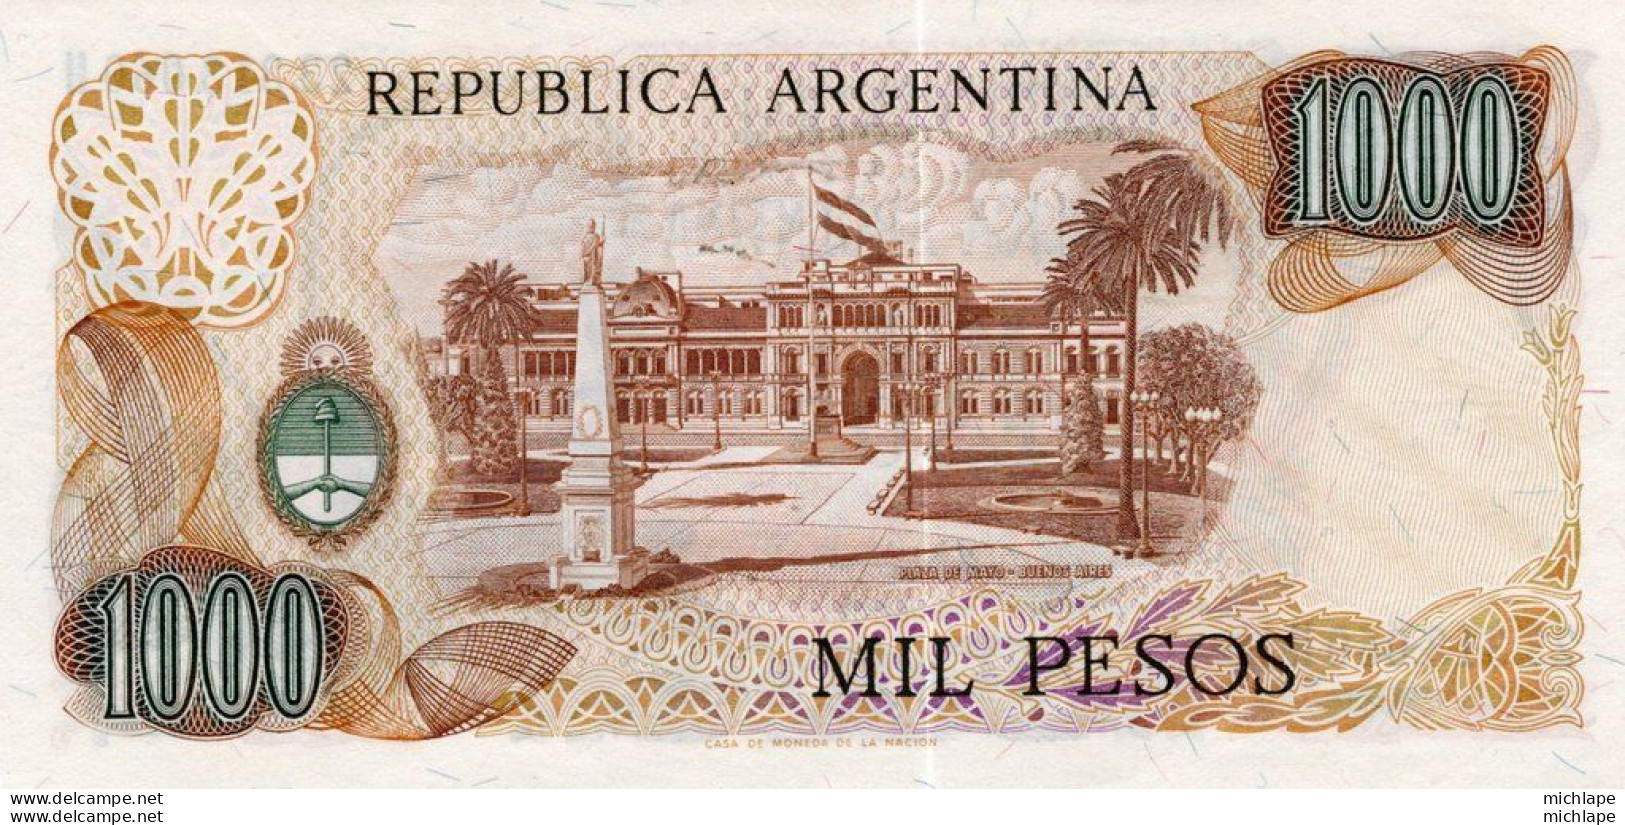 BILLET ARGENTINA NOTE 1000 PESOS (1977) NEUF - Argentine